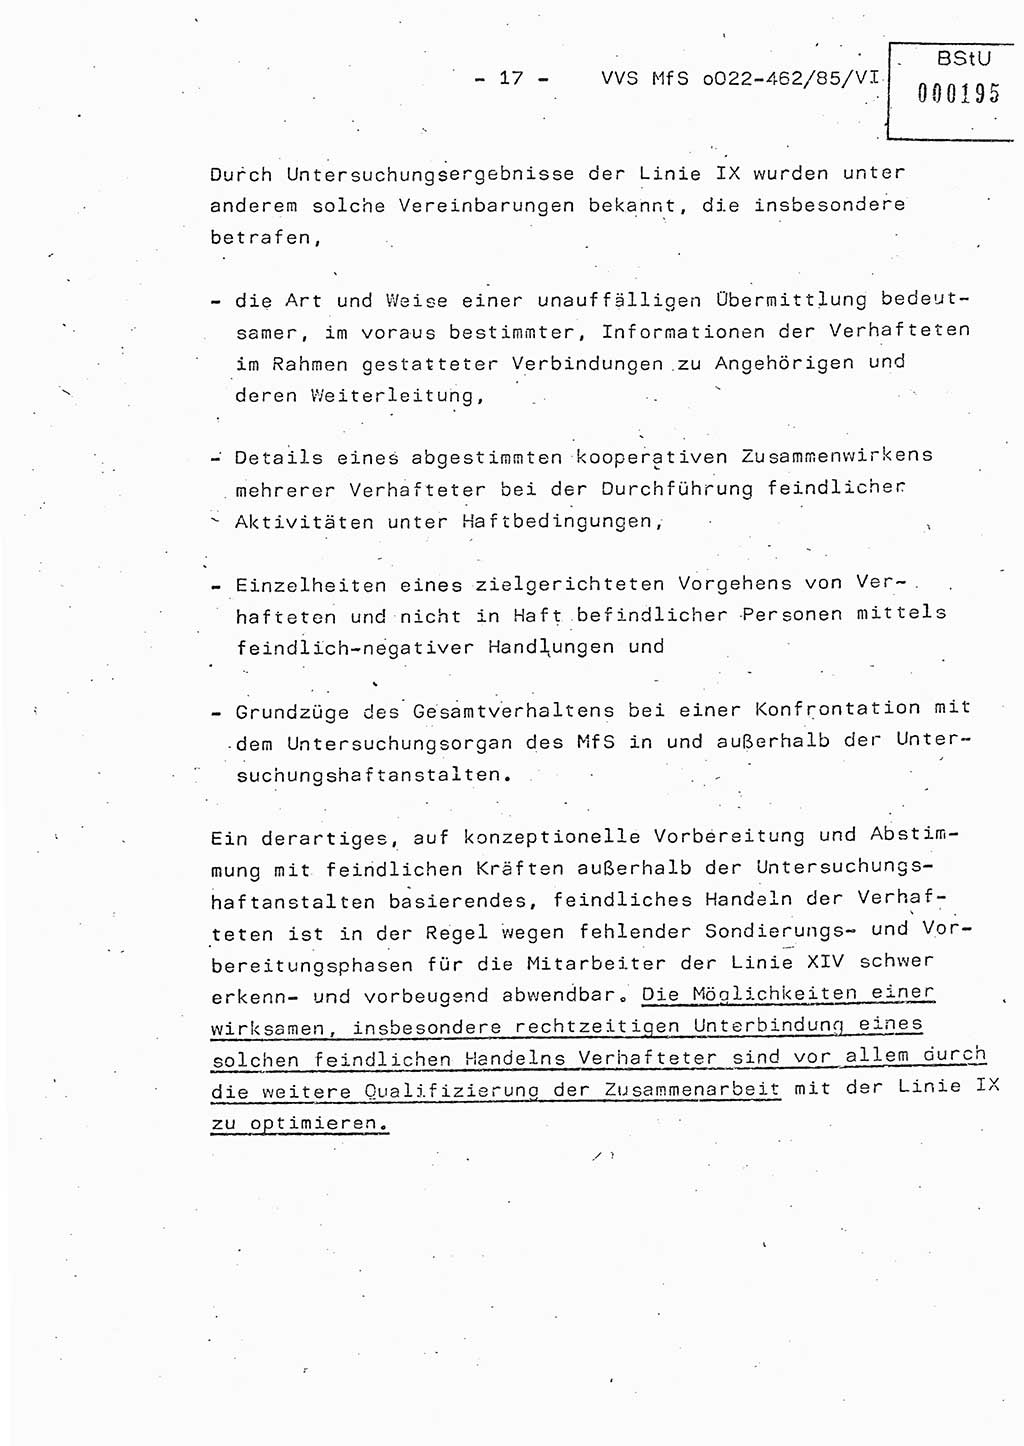 Der Untersuchungshaftvollzug im MfS, Schulungsmaterial Teil Ⅵ, Ministerium für Staatssicherheit [Deutsche Demokratische Republik (DDR)], Abteilung (Abt.) ⅩⅣ, Vertrauliche Verschlußsache (VVS) o022-462/85/Ⅵ, Berlin 1985, Seite 17 (Sch.-Mat. Ⅵ MfS DDR Abt. ⅩⅣ VVS o022-462/85/Ⅵ 1985, S. 17)